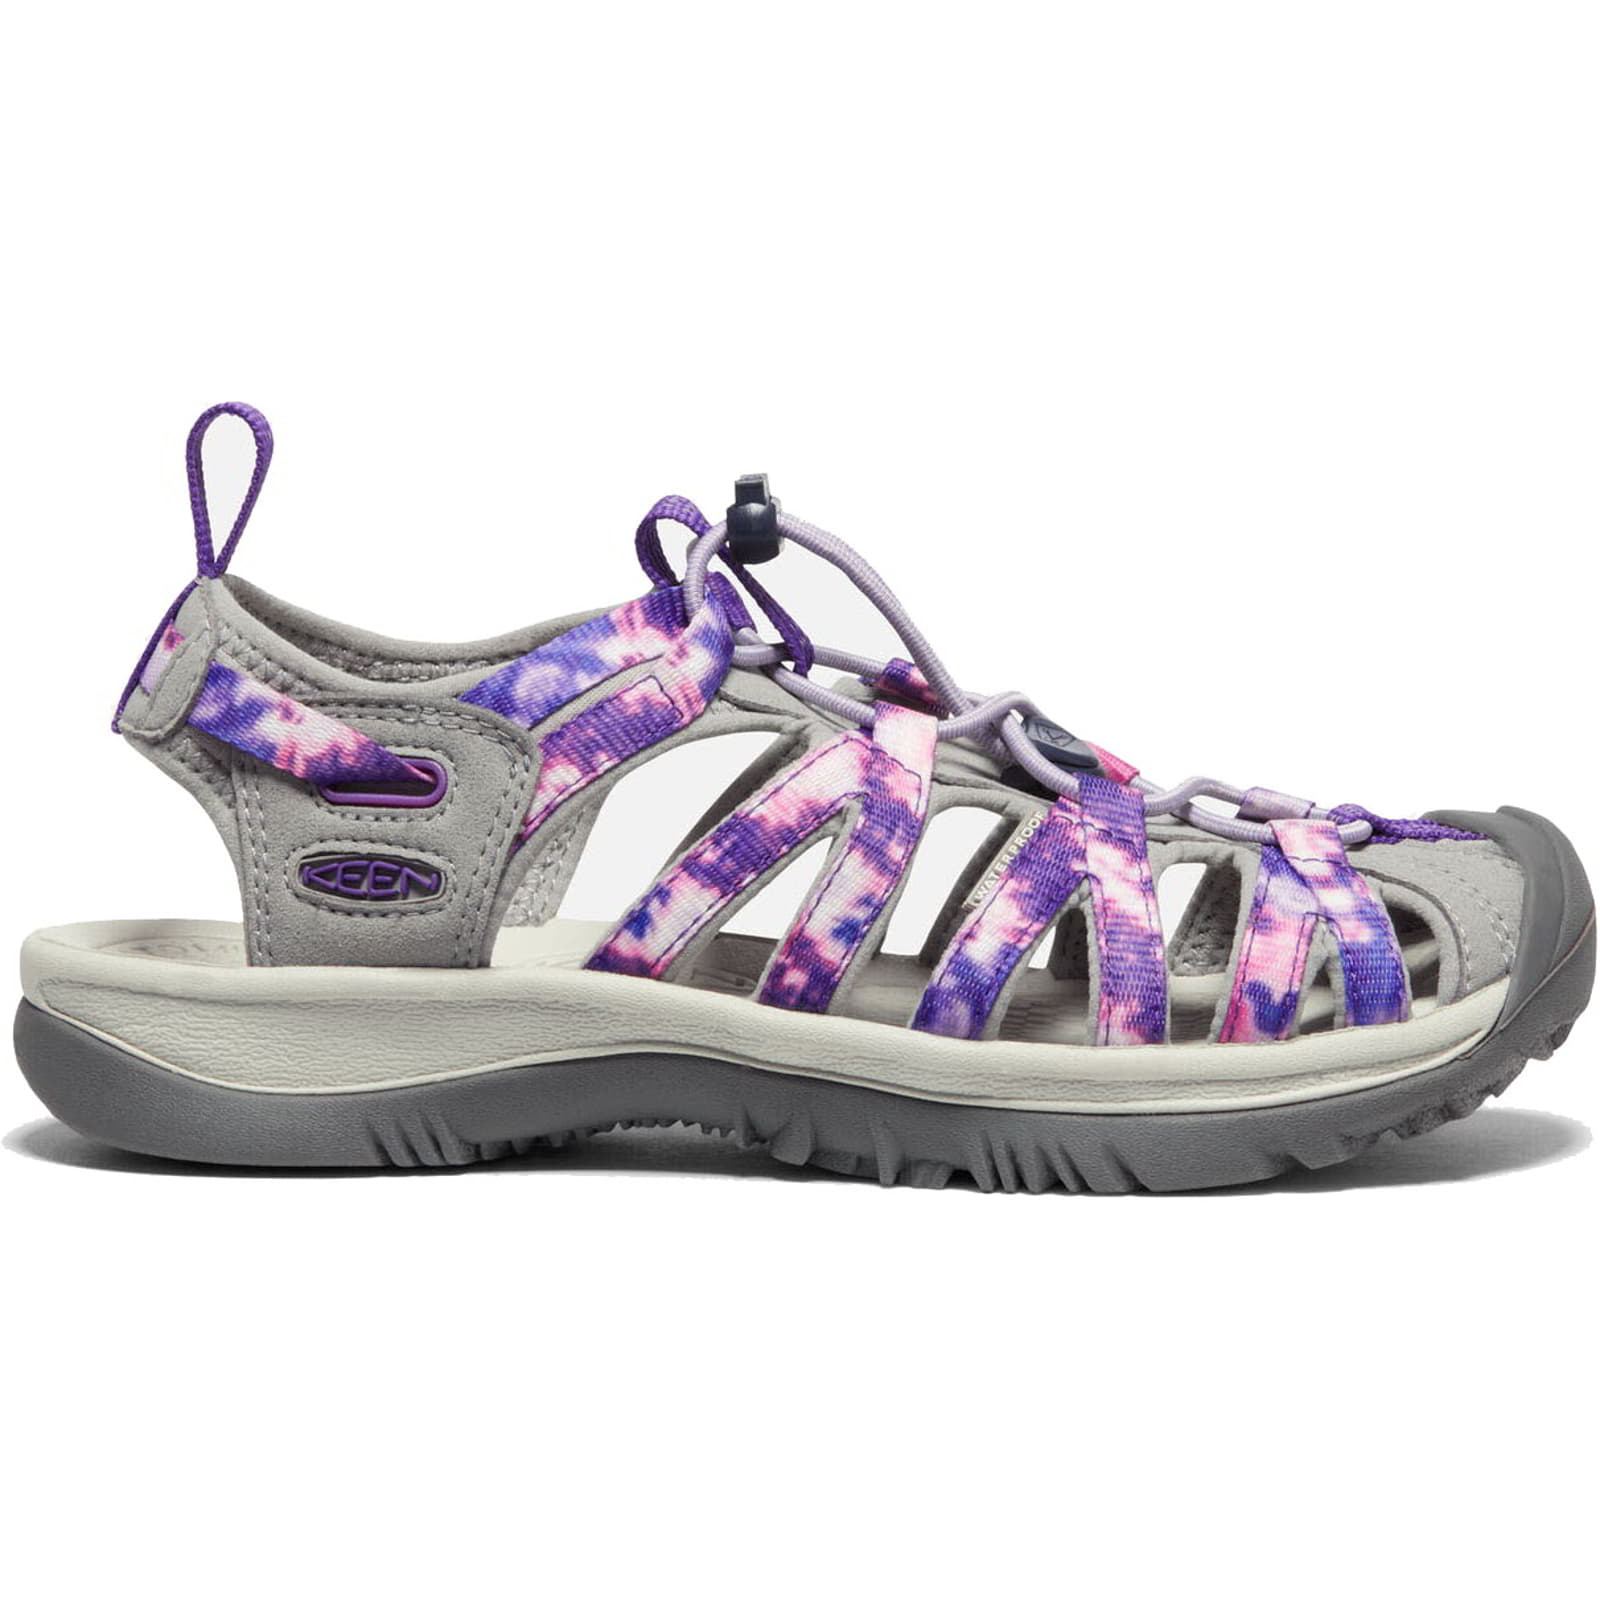 Keen Whisper Womens Walking Sandals - Tie Dye Vapor 2951